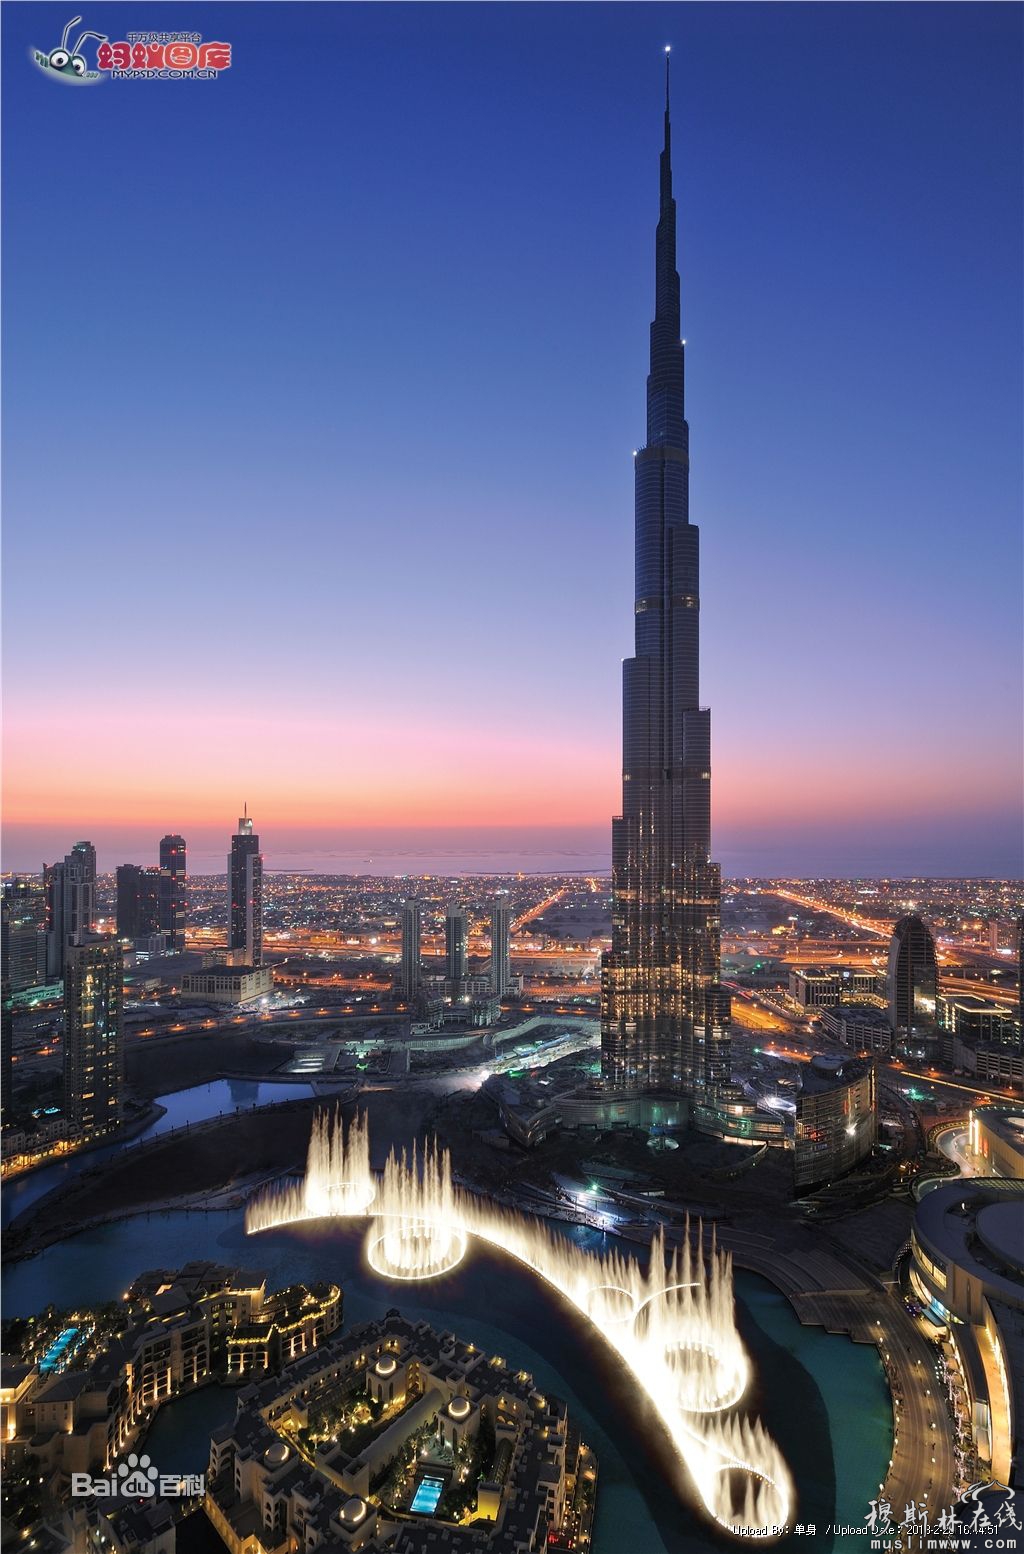 哈利法塔 原名迪拜塔 又称迪拜大厦或比斯迪拜塔